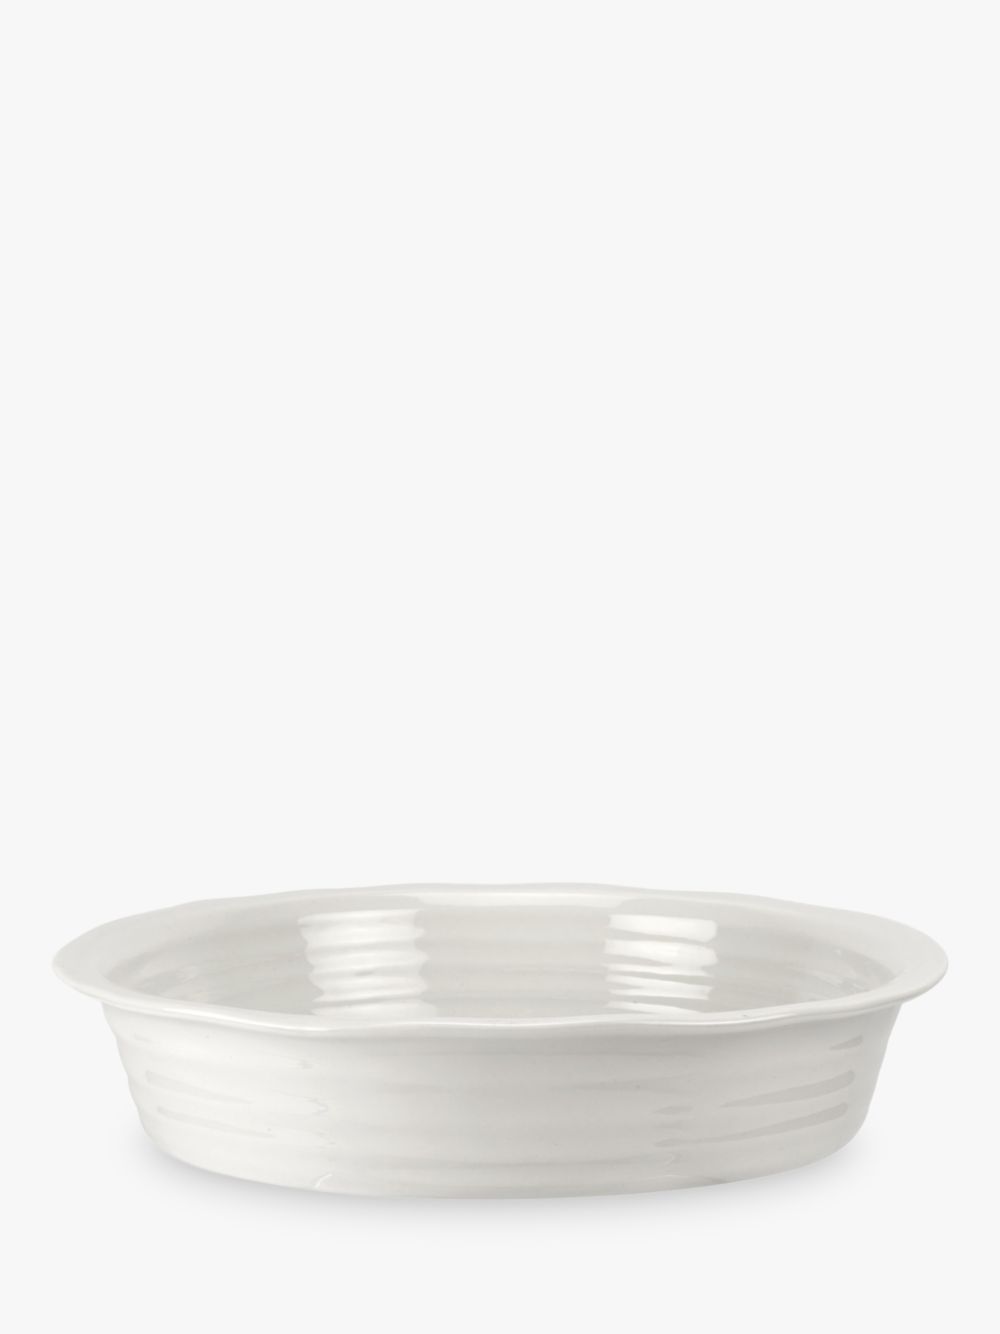 Фарфоровая круглая форма для пирога Sophie Conran for Portmeirion, 27 см, белая форма для пирога hitt sahara dune круглая 25 см